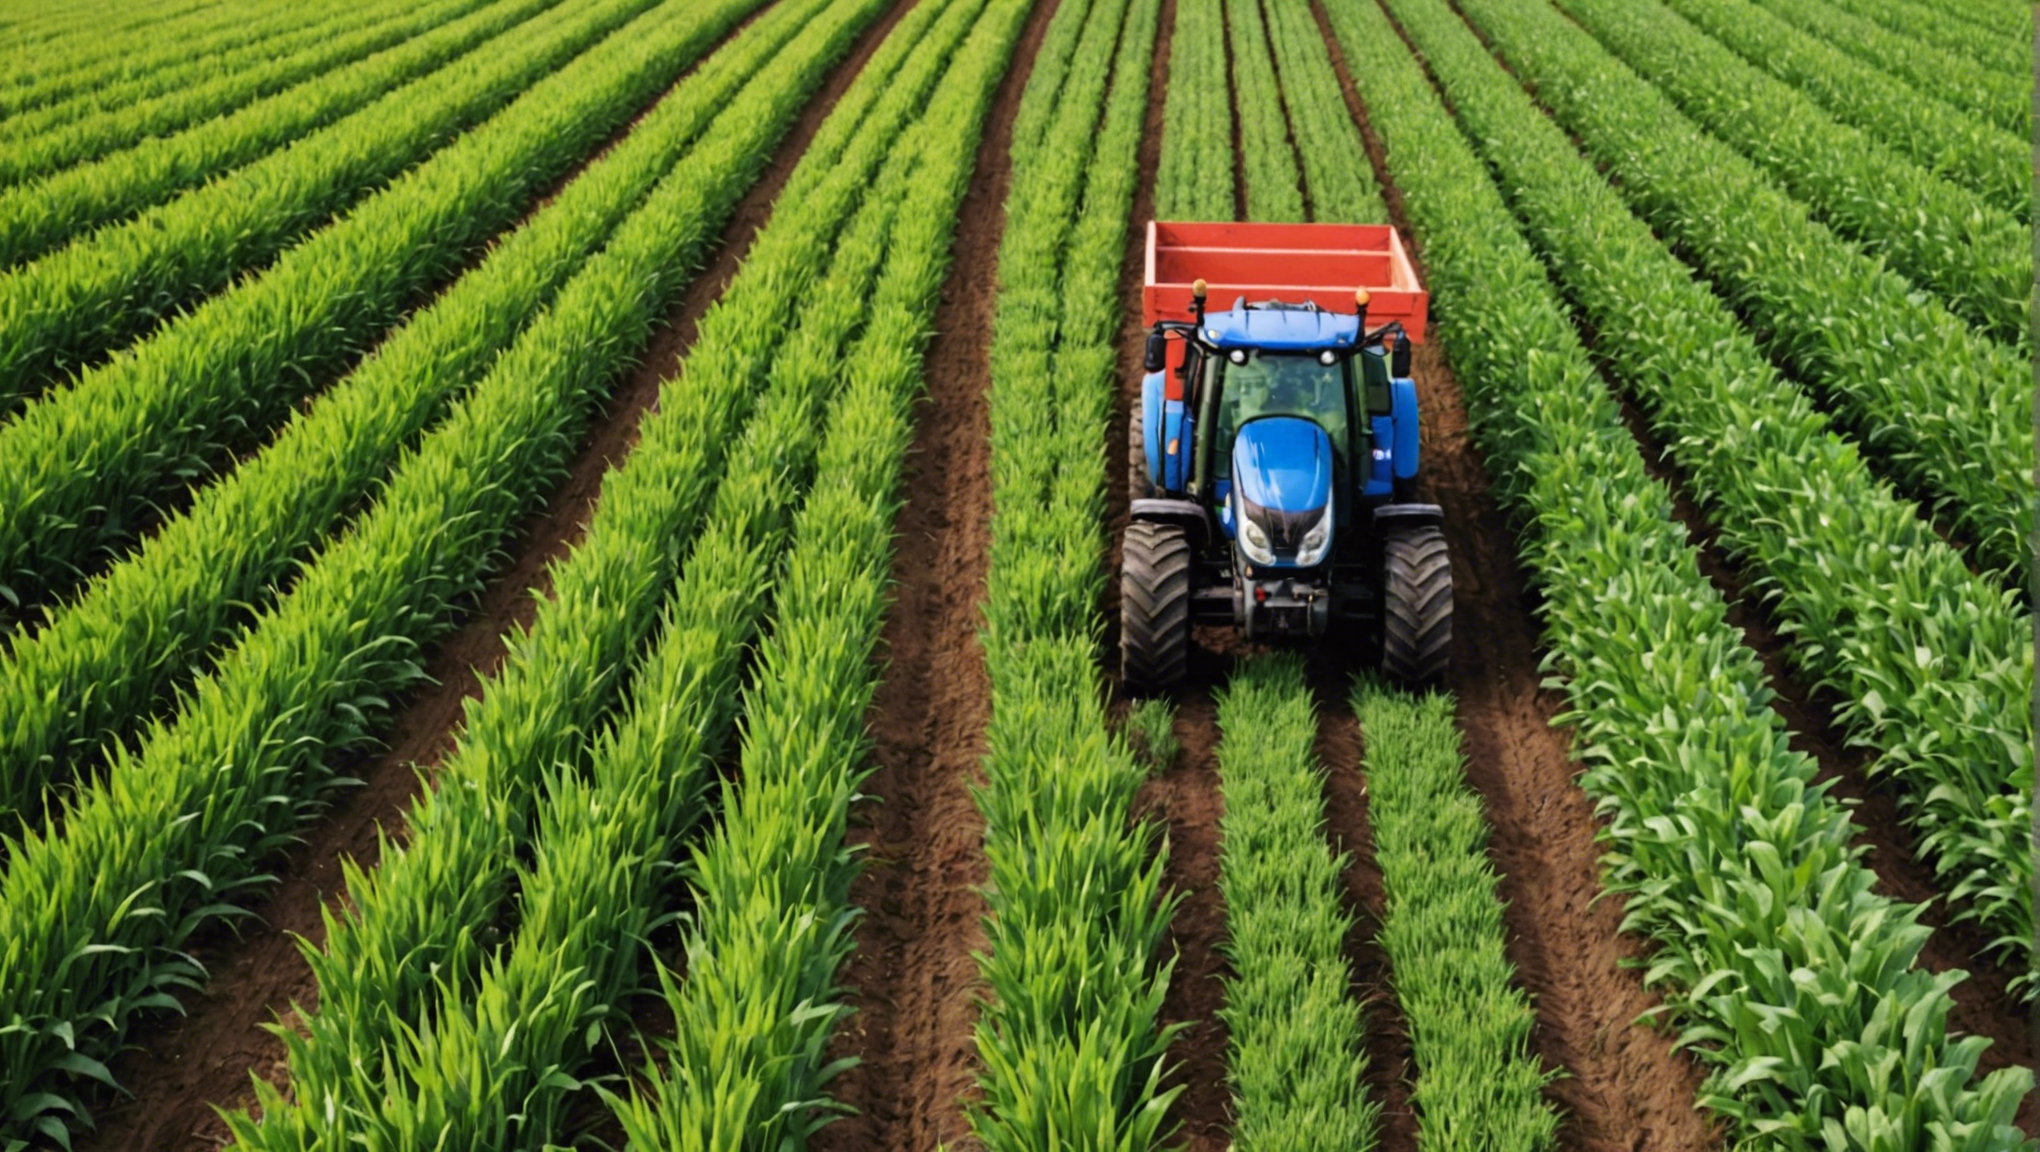 découvrez la liste des engrais autorisés en agriculture biologique pour l'année 2021 et optimisez vos pratiques agricoles de manière éco-responsable.